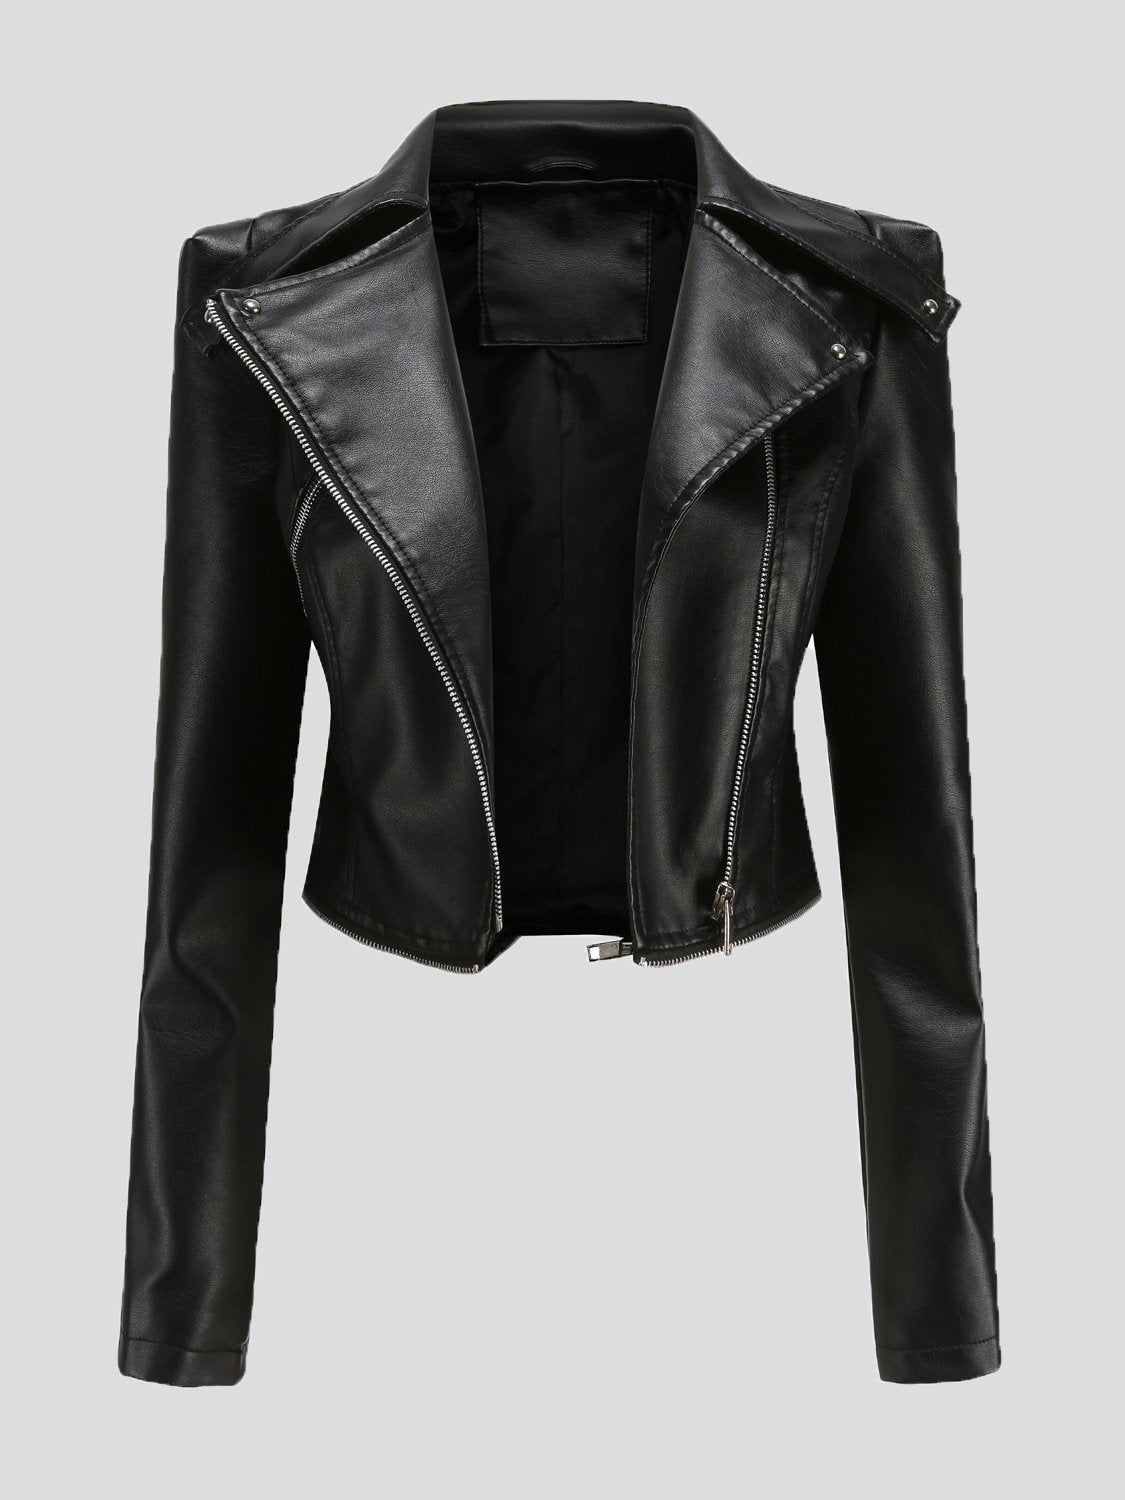 Jackets - Detachable Hem Long Sleeve Fashion Leather Jacket - MsDressly